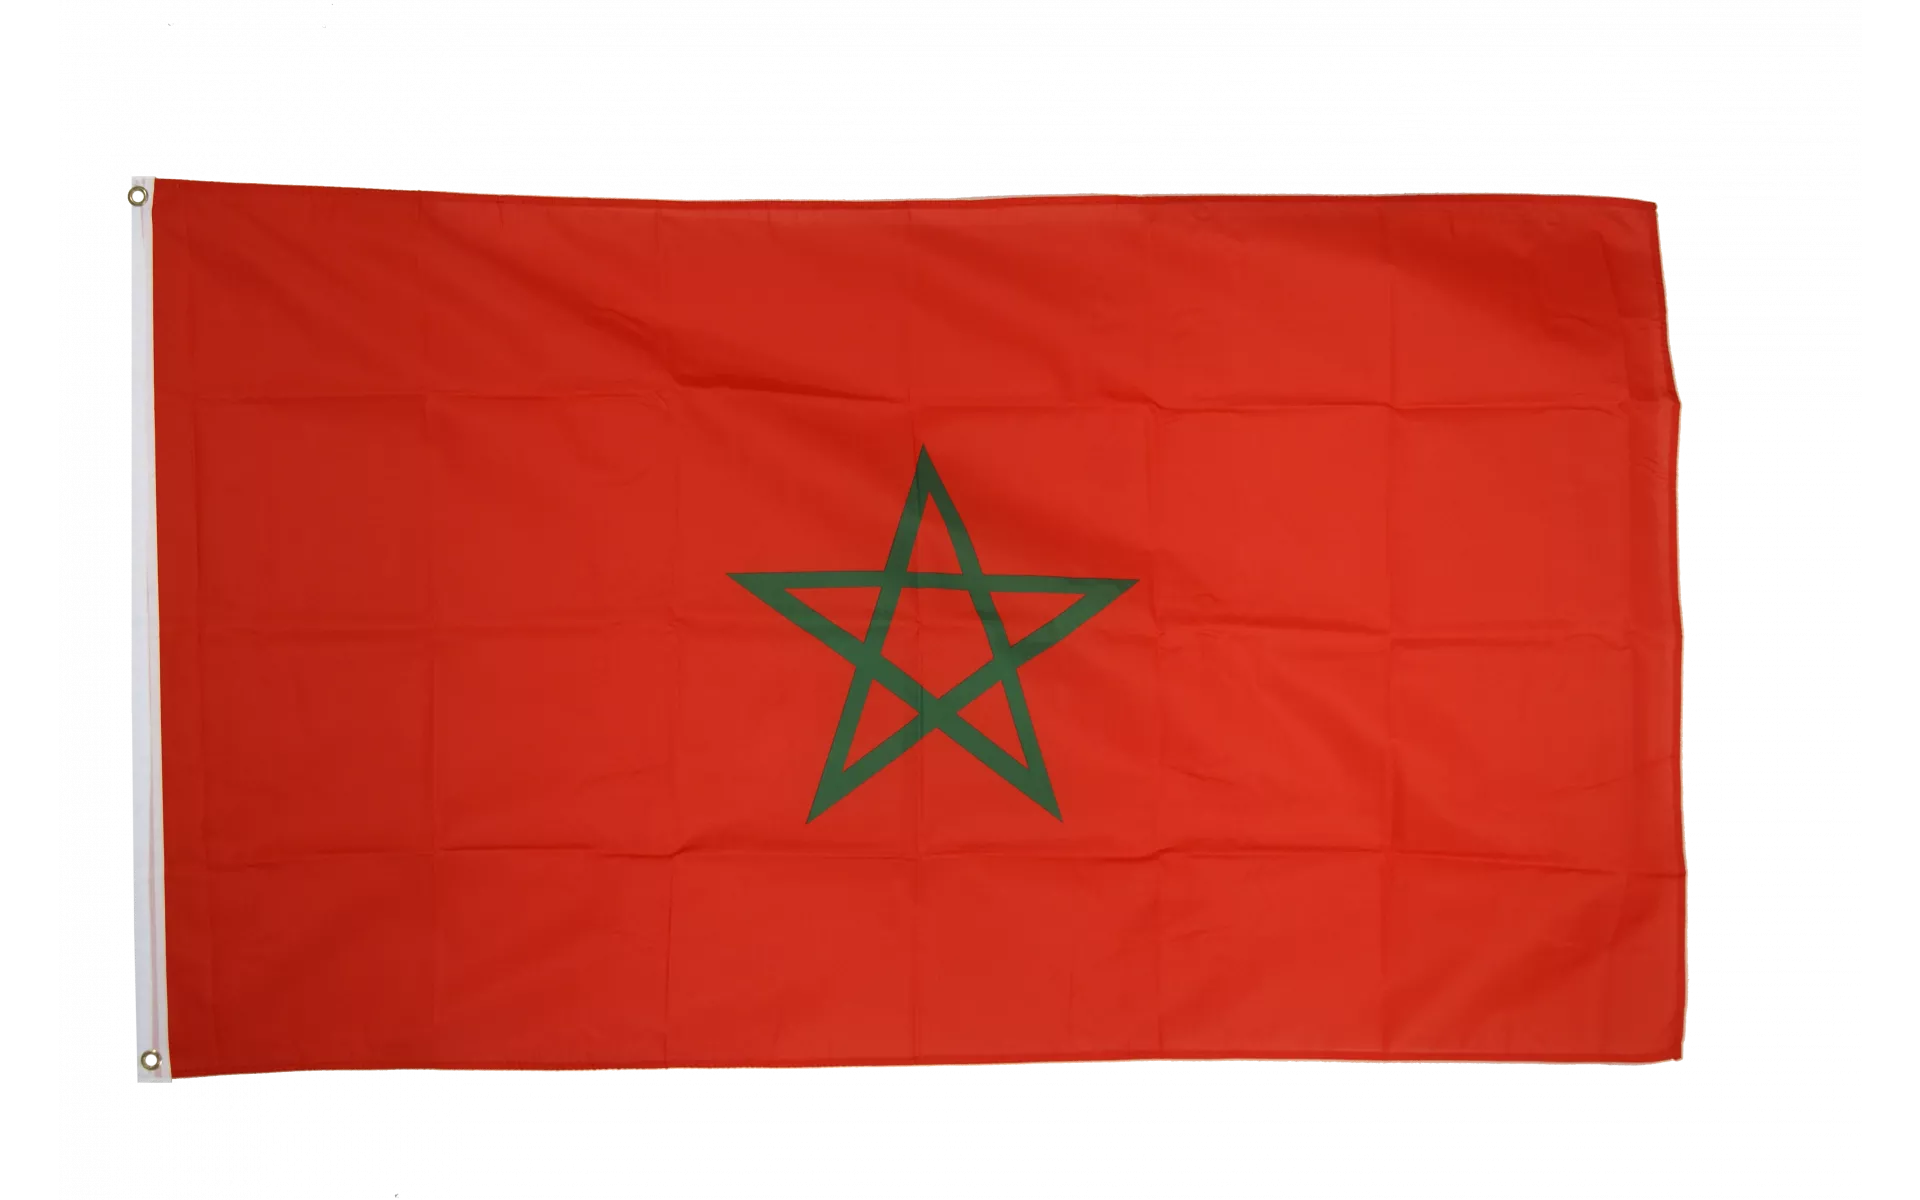 Drapeau Maroc disponible en plusieurs tailles